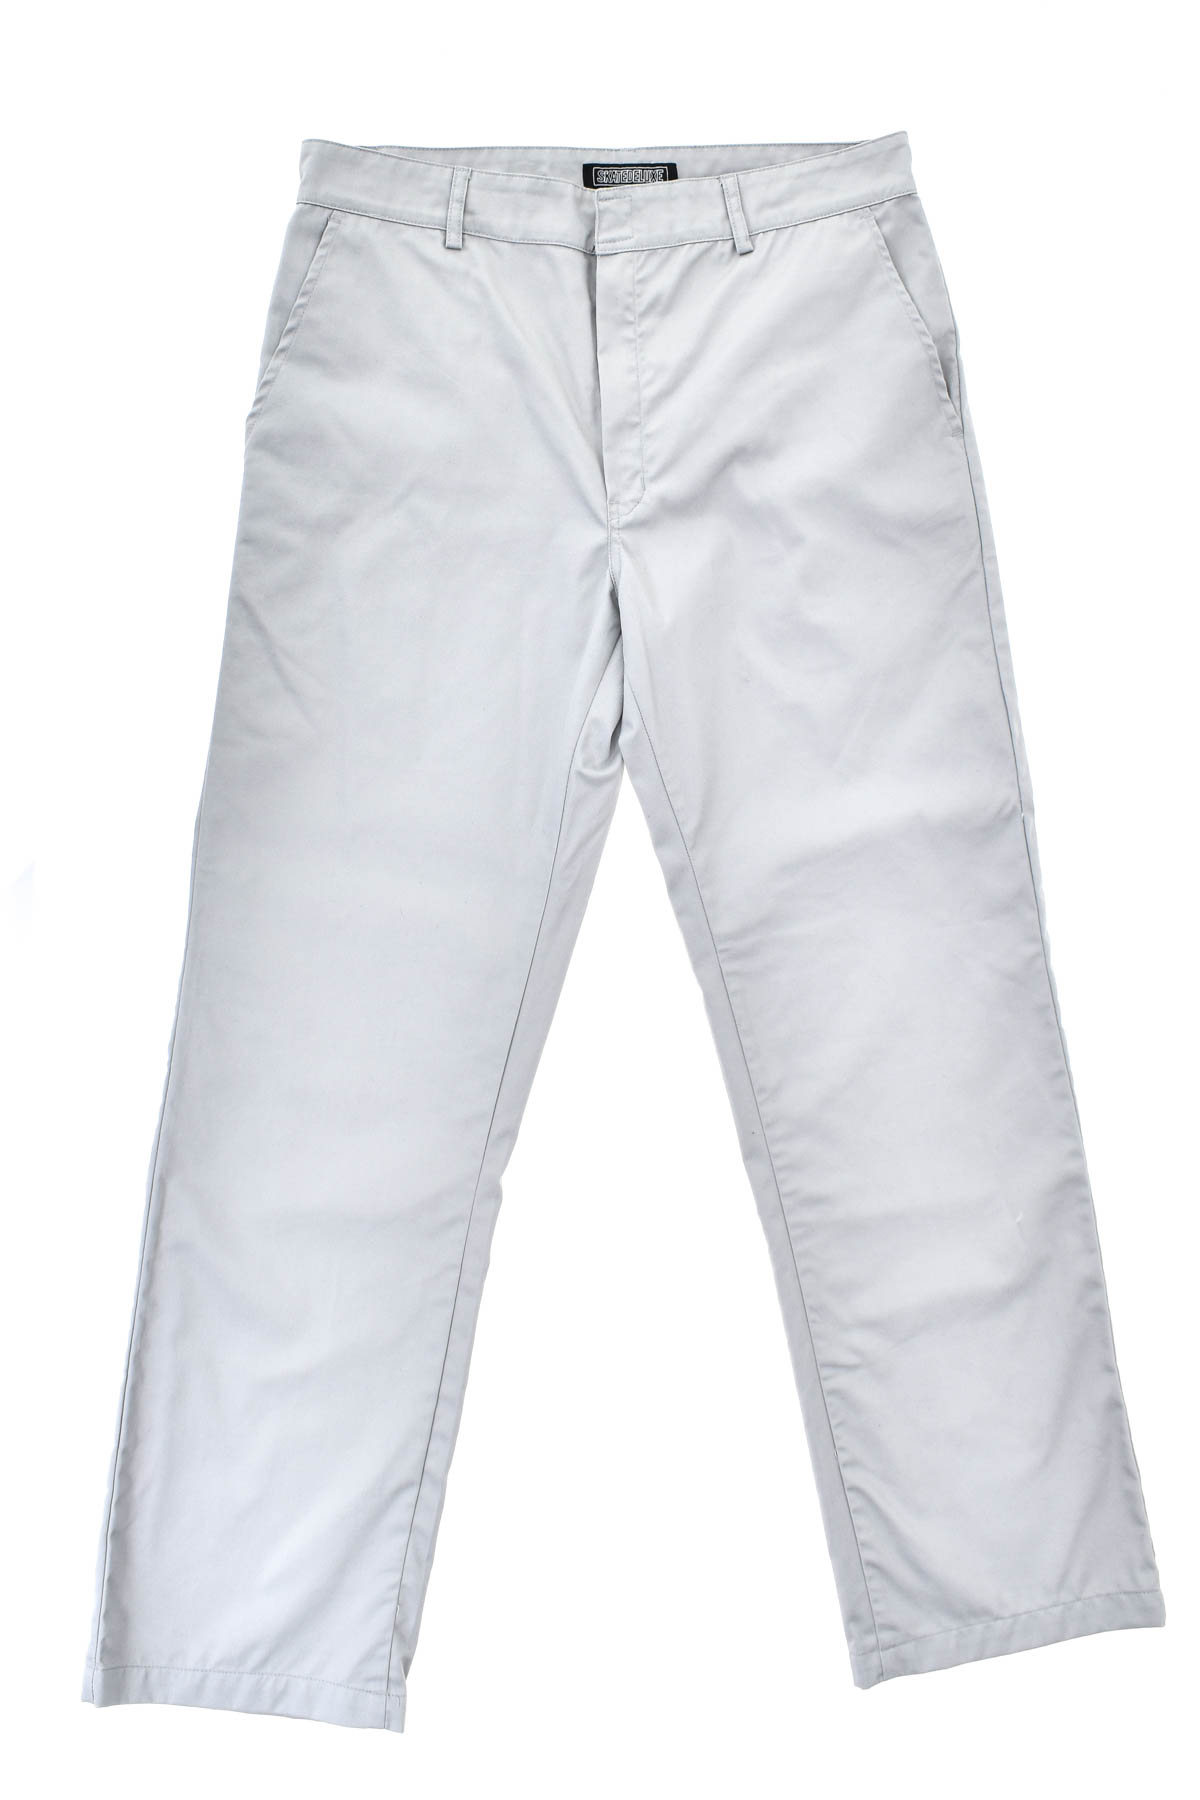 Pantalon pentru bărbați - SKATEDELUXE - 0